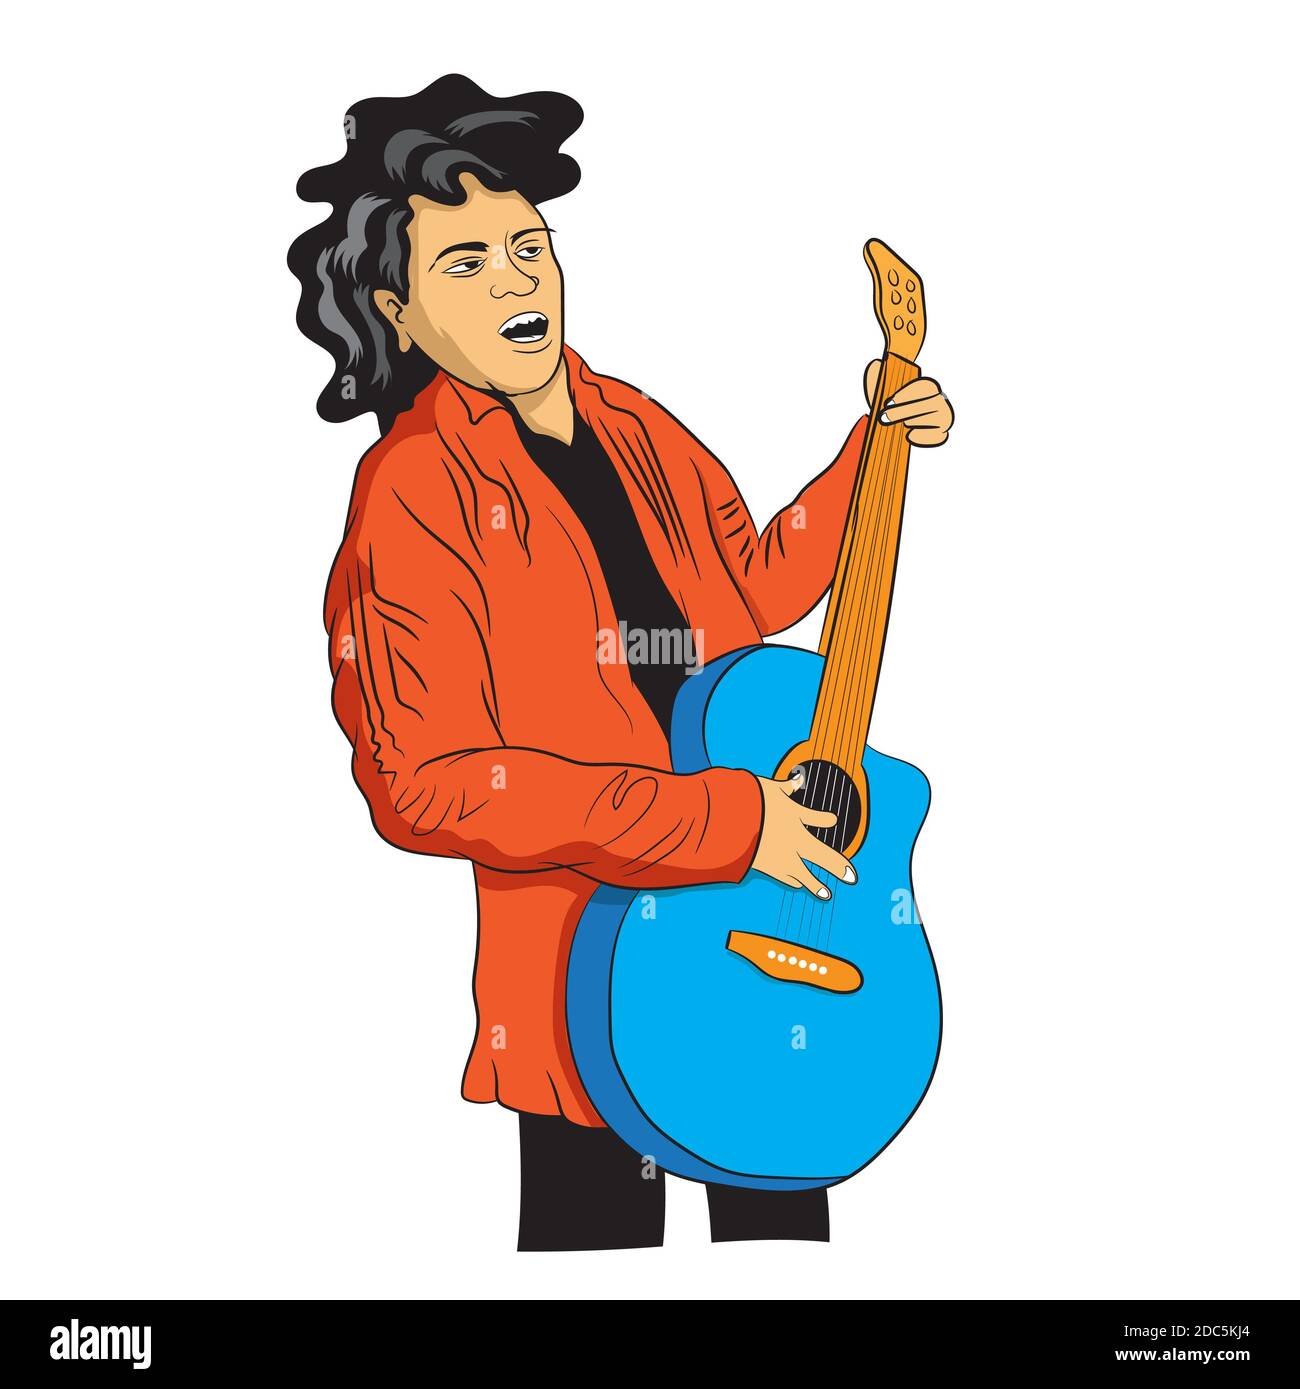 L'homme chantant et jouant de la guitare acoustique portant une veste. Illustrator vectoriel. Banque D'Images